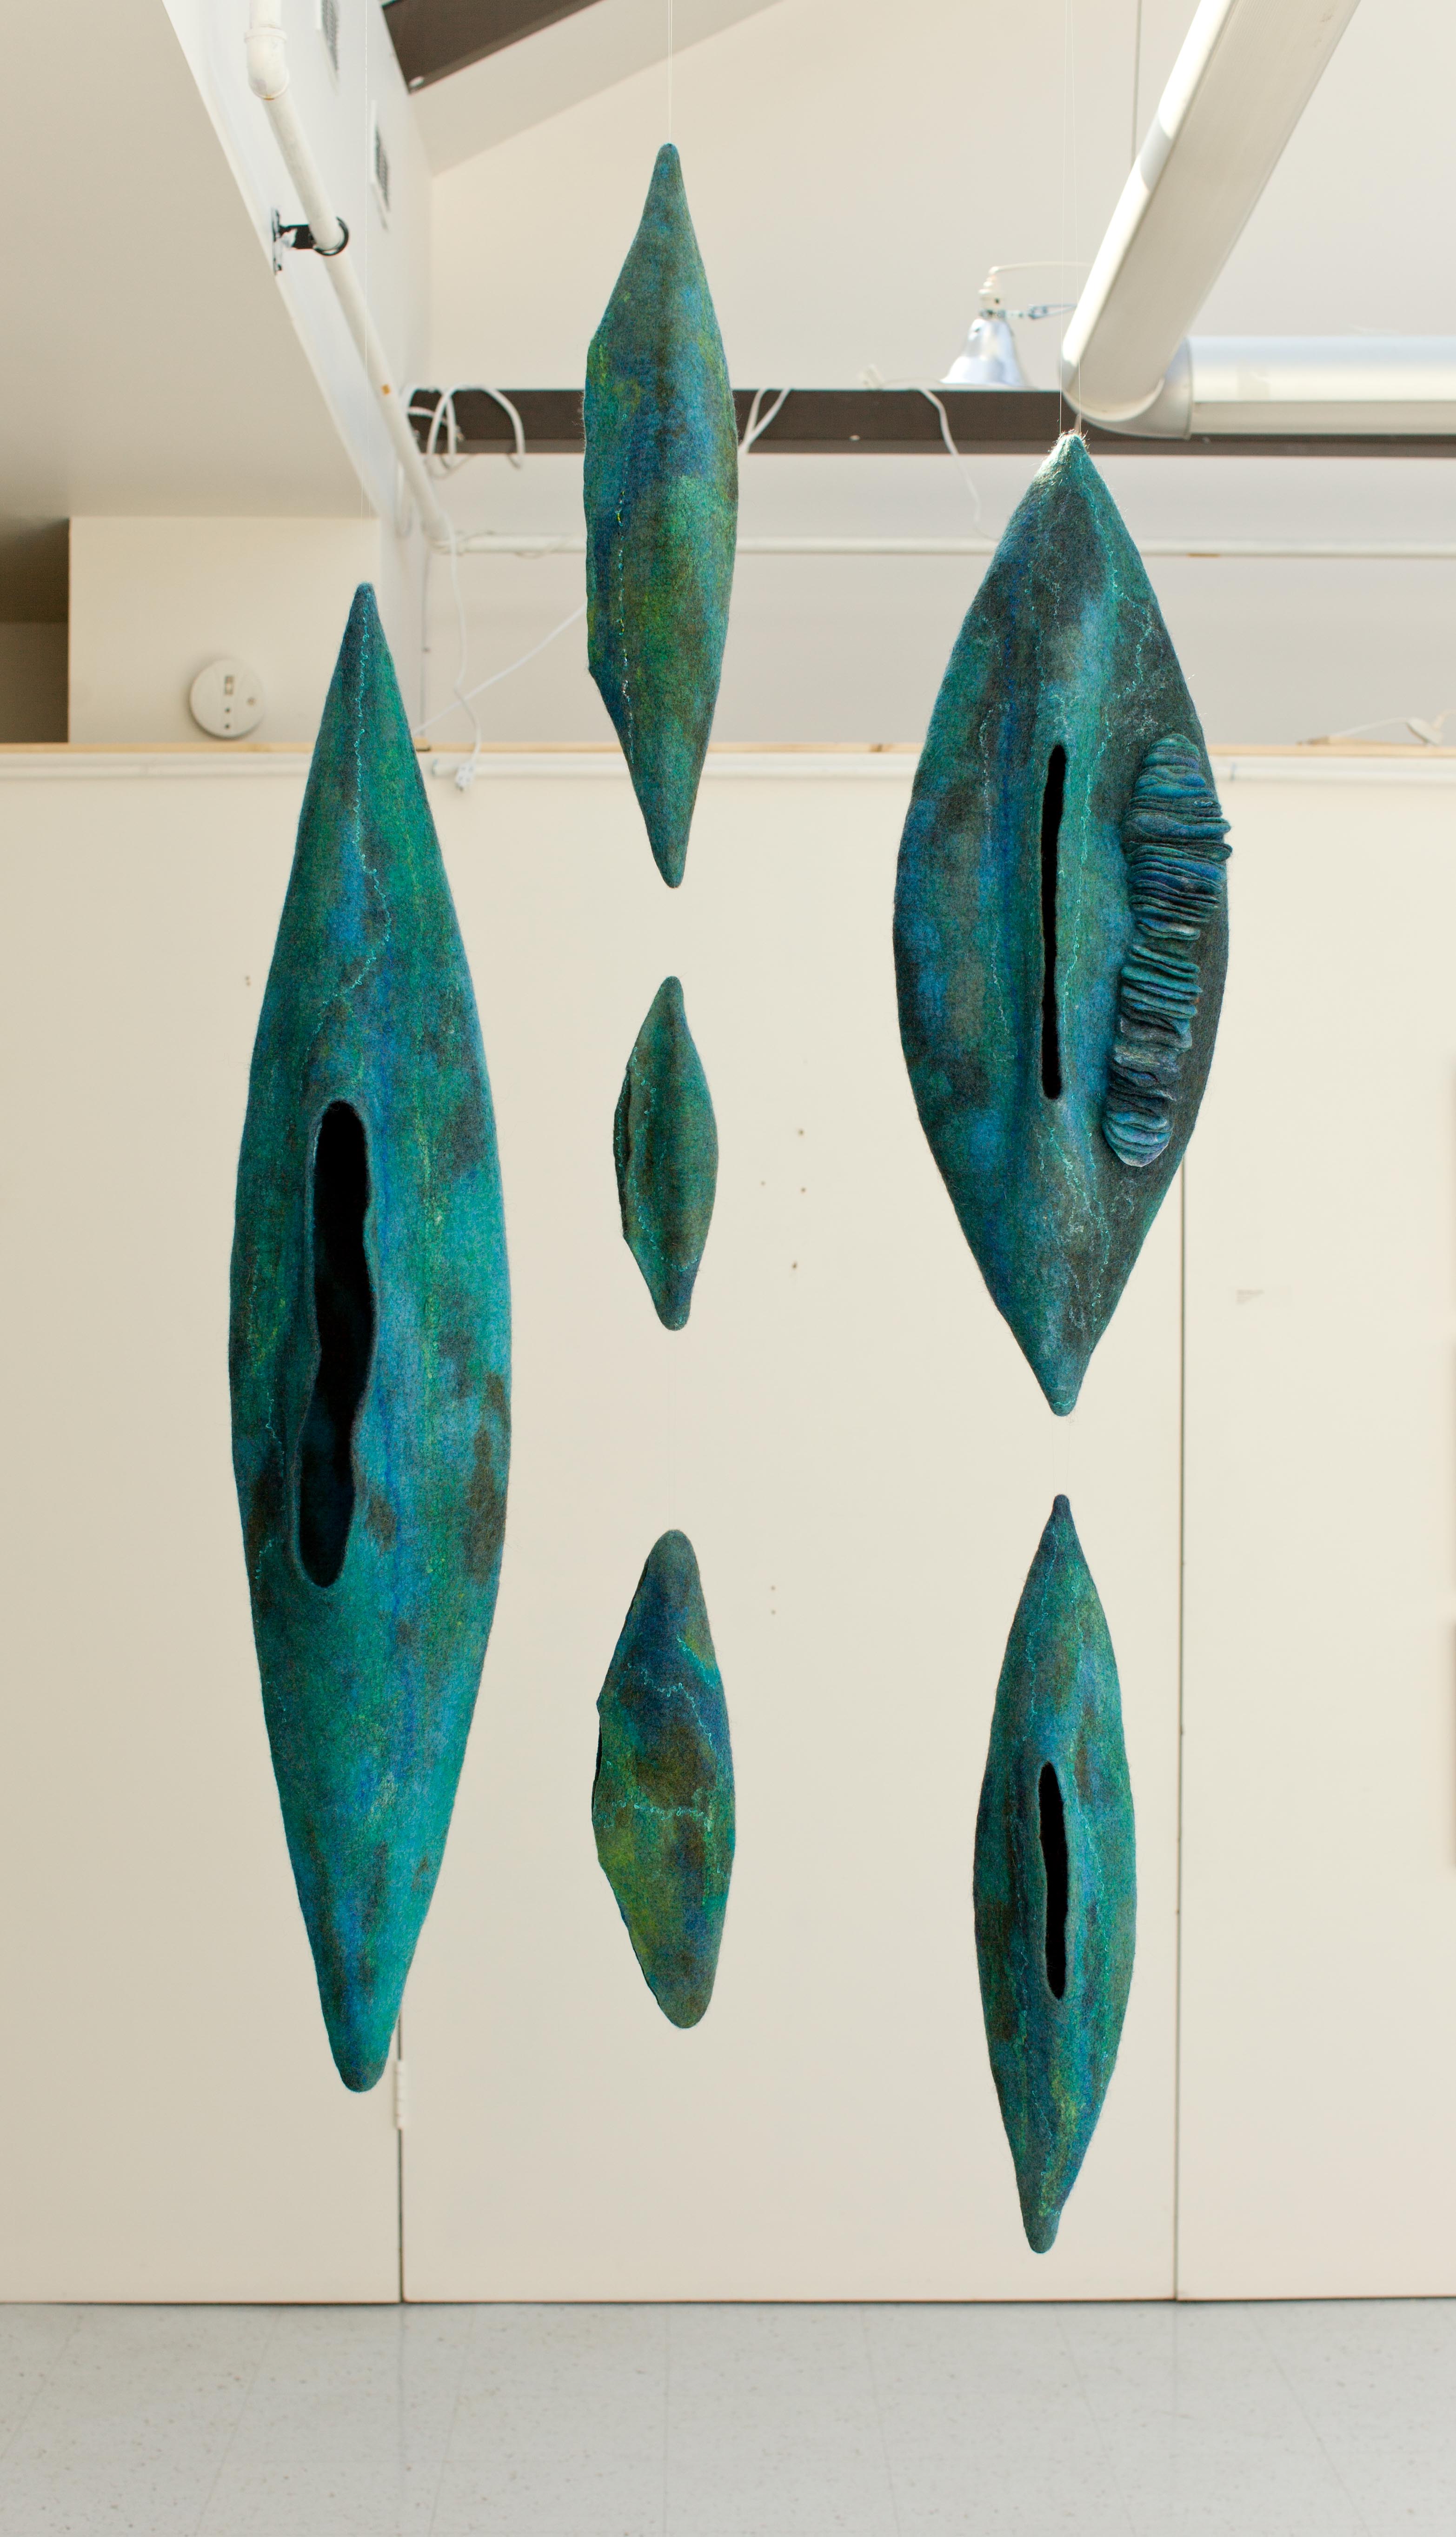 Felt maker and textile artist Andrea Graham creates 3d felt sculptures and installations.